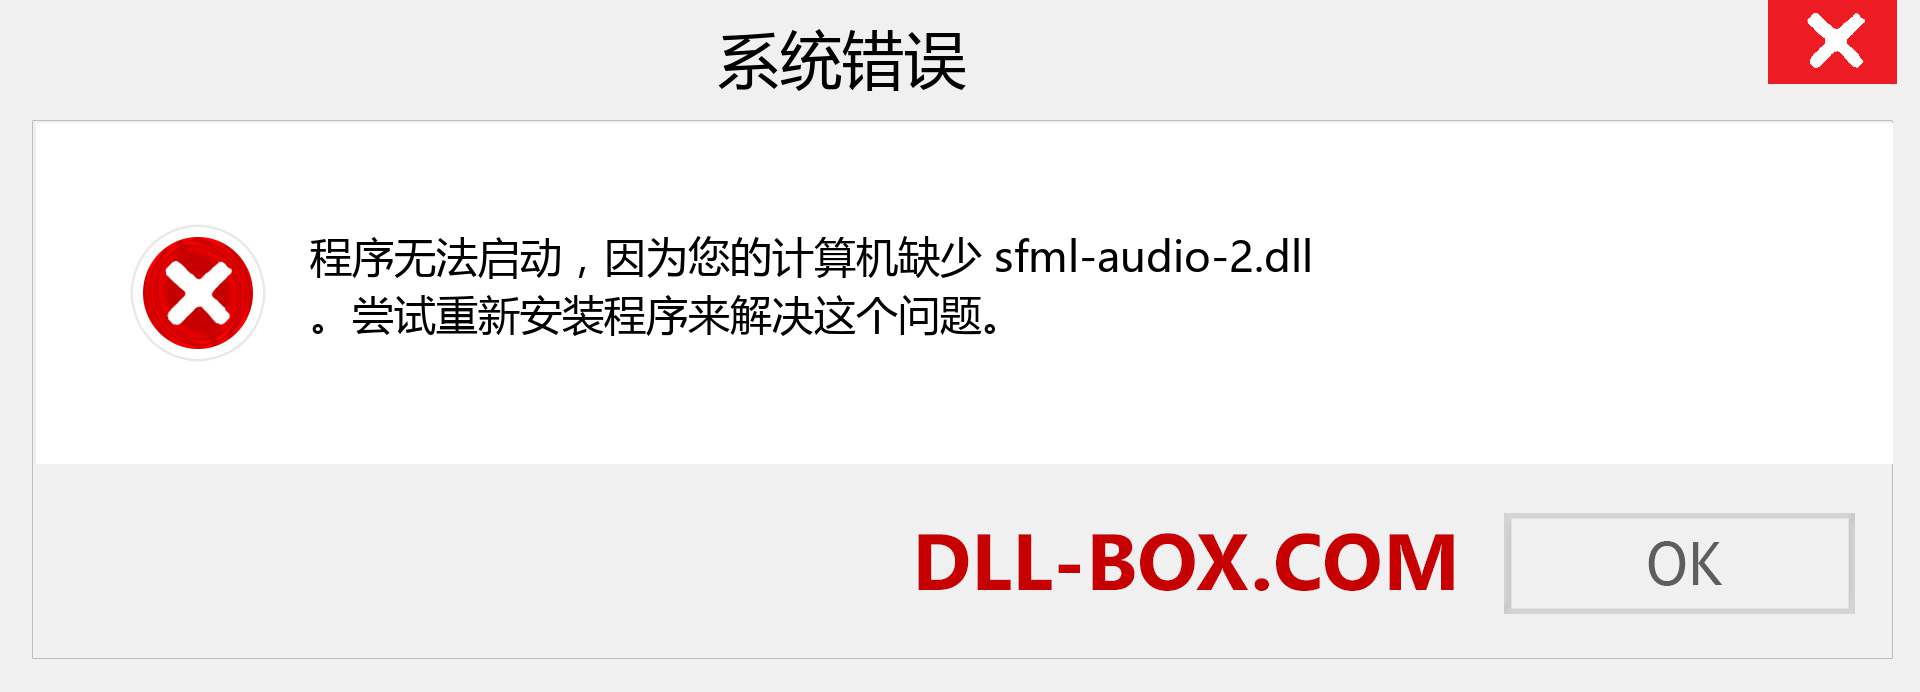 sfml-audio-2.dll 文件丢失？。 适用于 Windows 7、8、10 的下载 - 修复 Windows、照片、图像上的 sfml-audio-2 dll 丢失错误